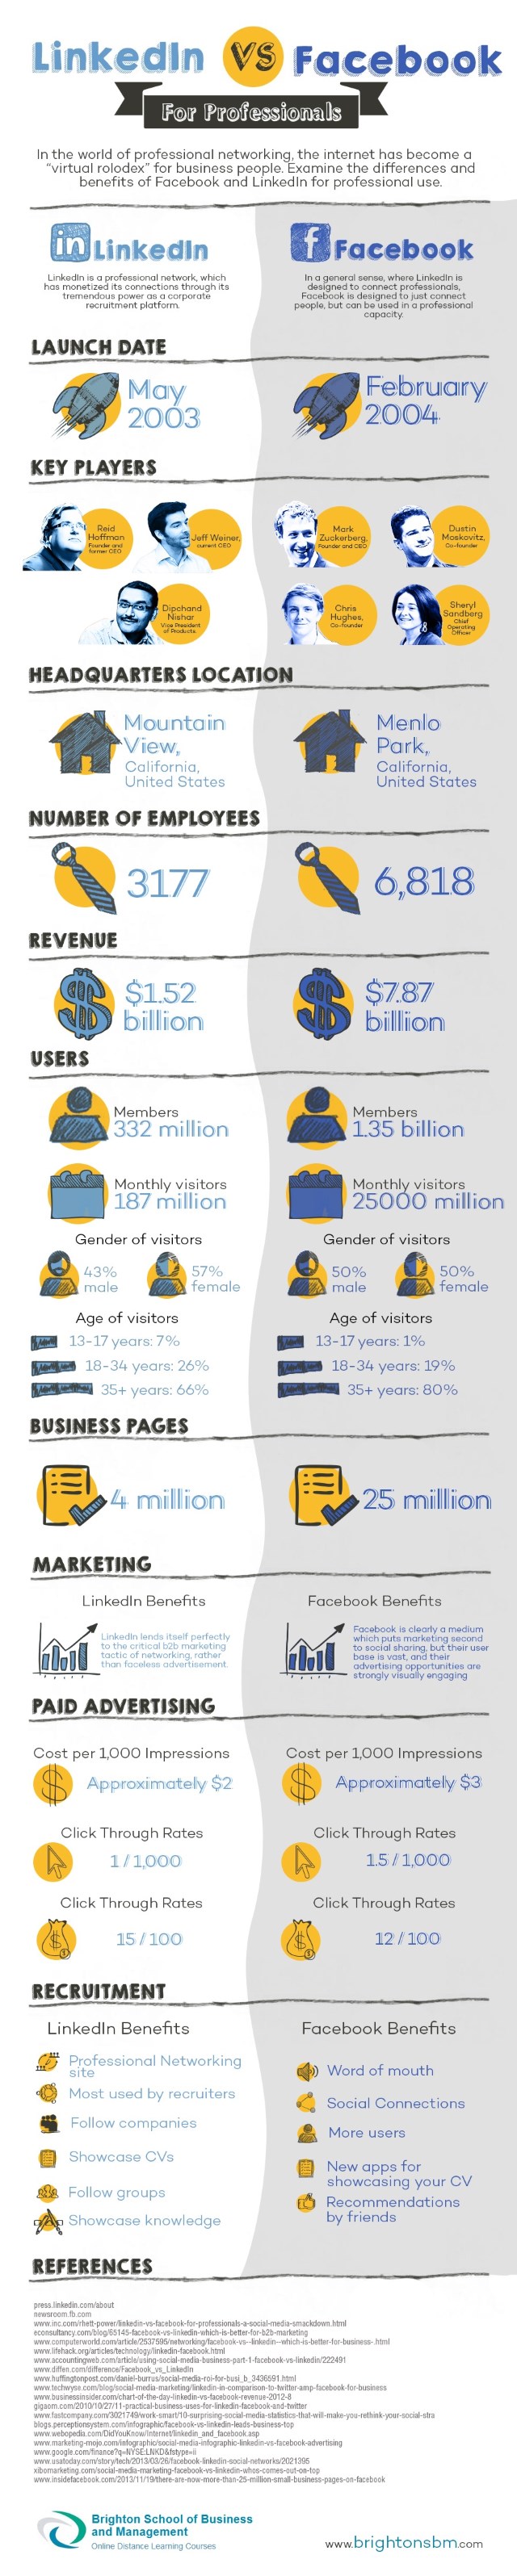 BSBM IG - LinkedIn vs Facebook - Infographic